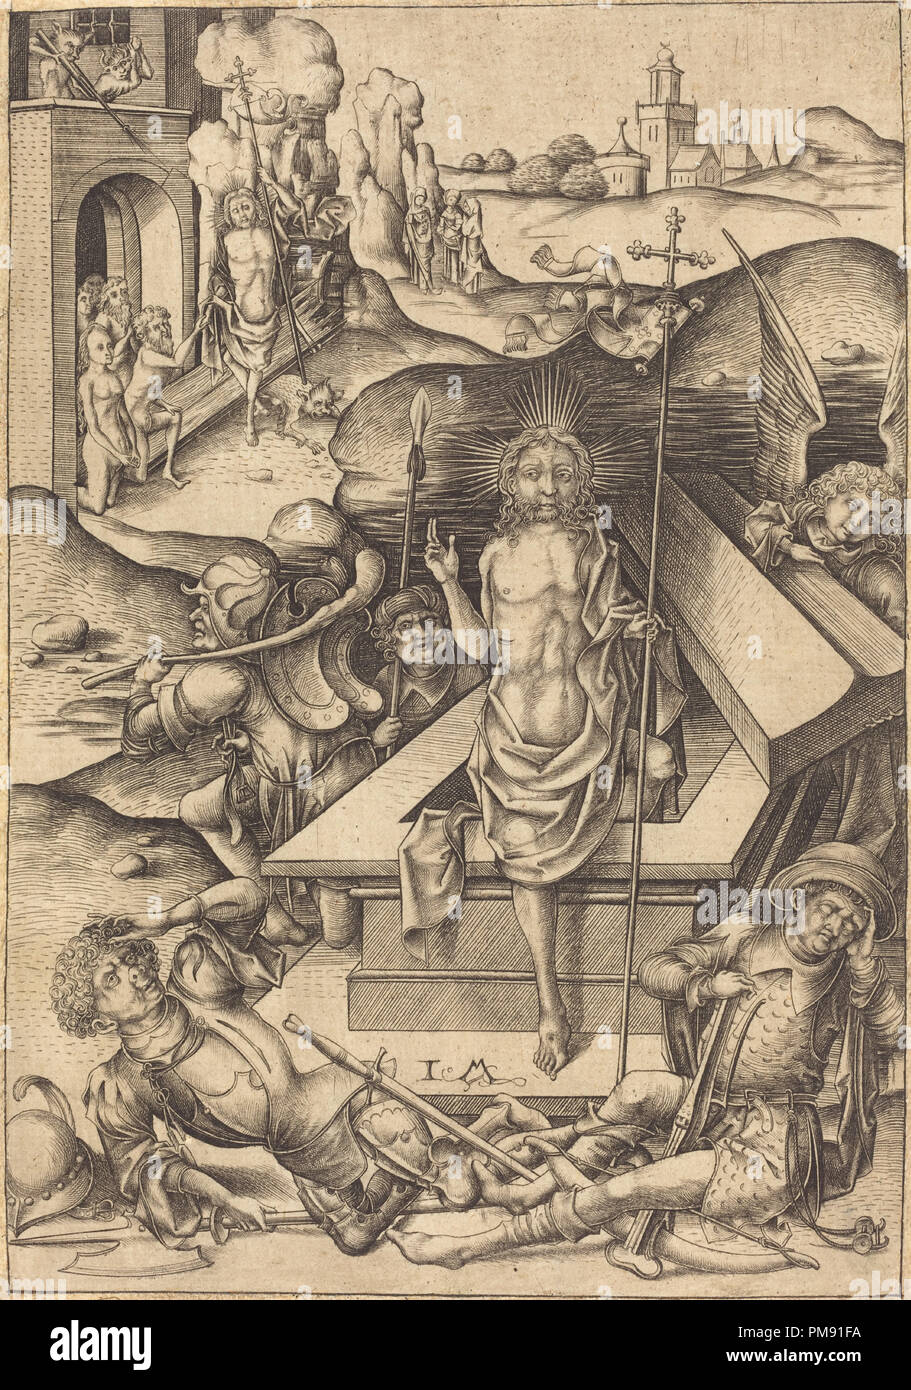 La Résurrection. En date du : ch. 1480. Technique : gravure. Musée : National Gallery of Art, Washington DC. Auteur : Israhel van Meckenem. Banque D'Images